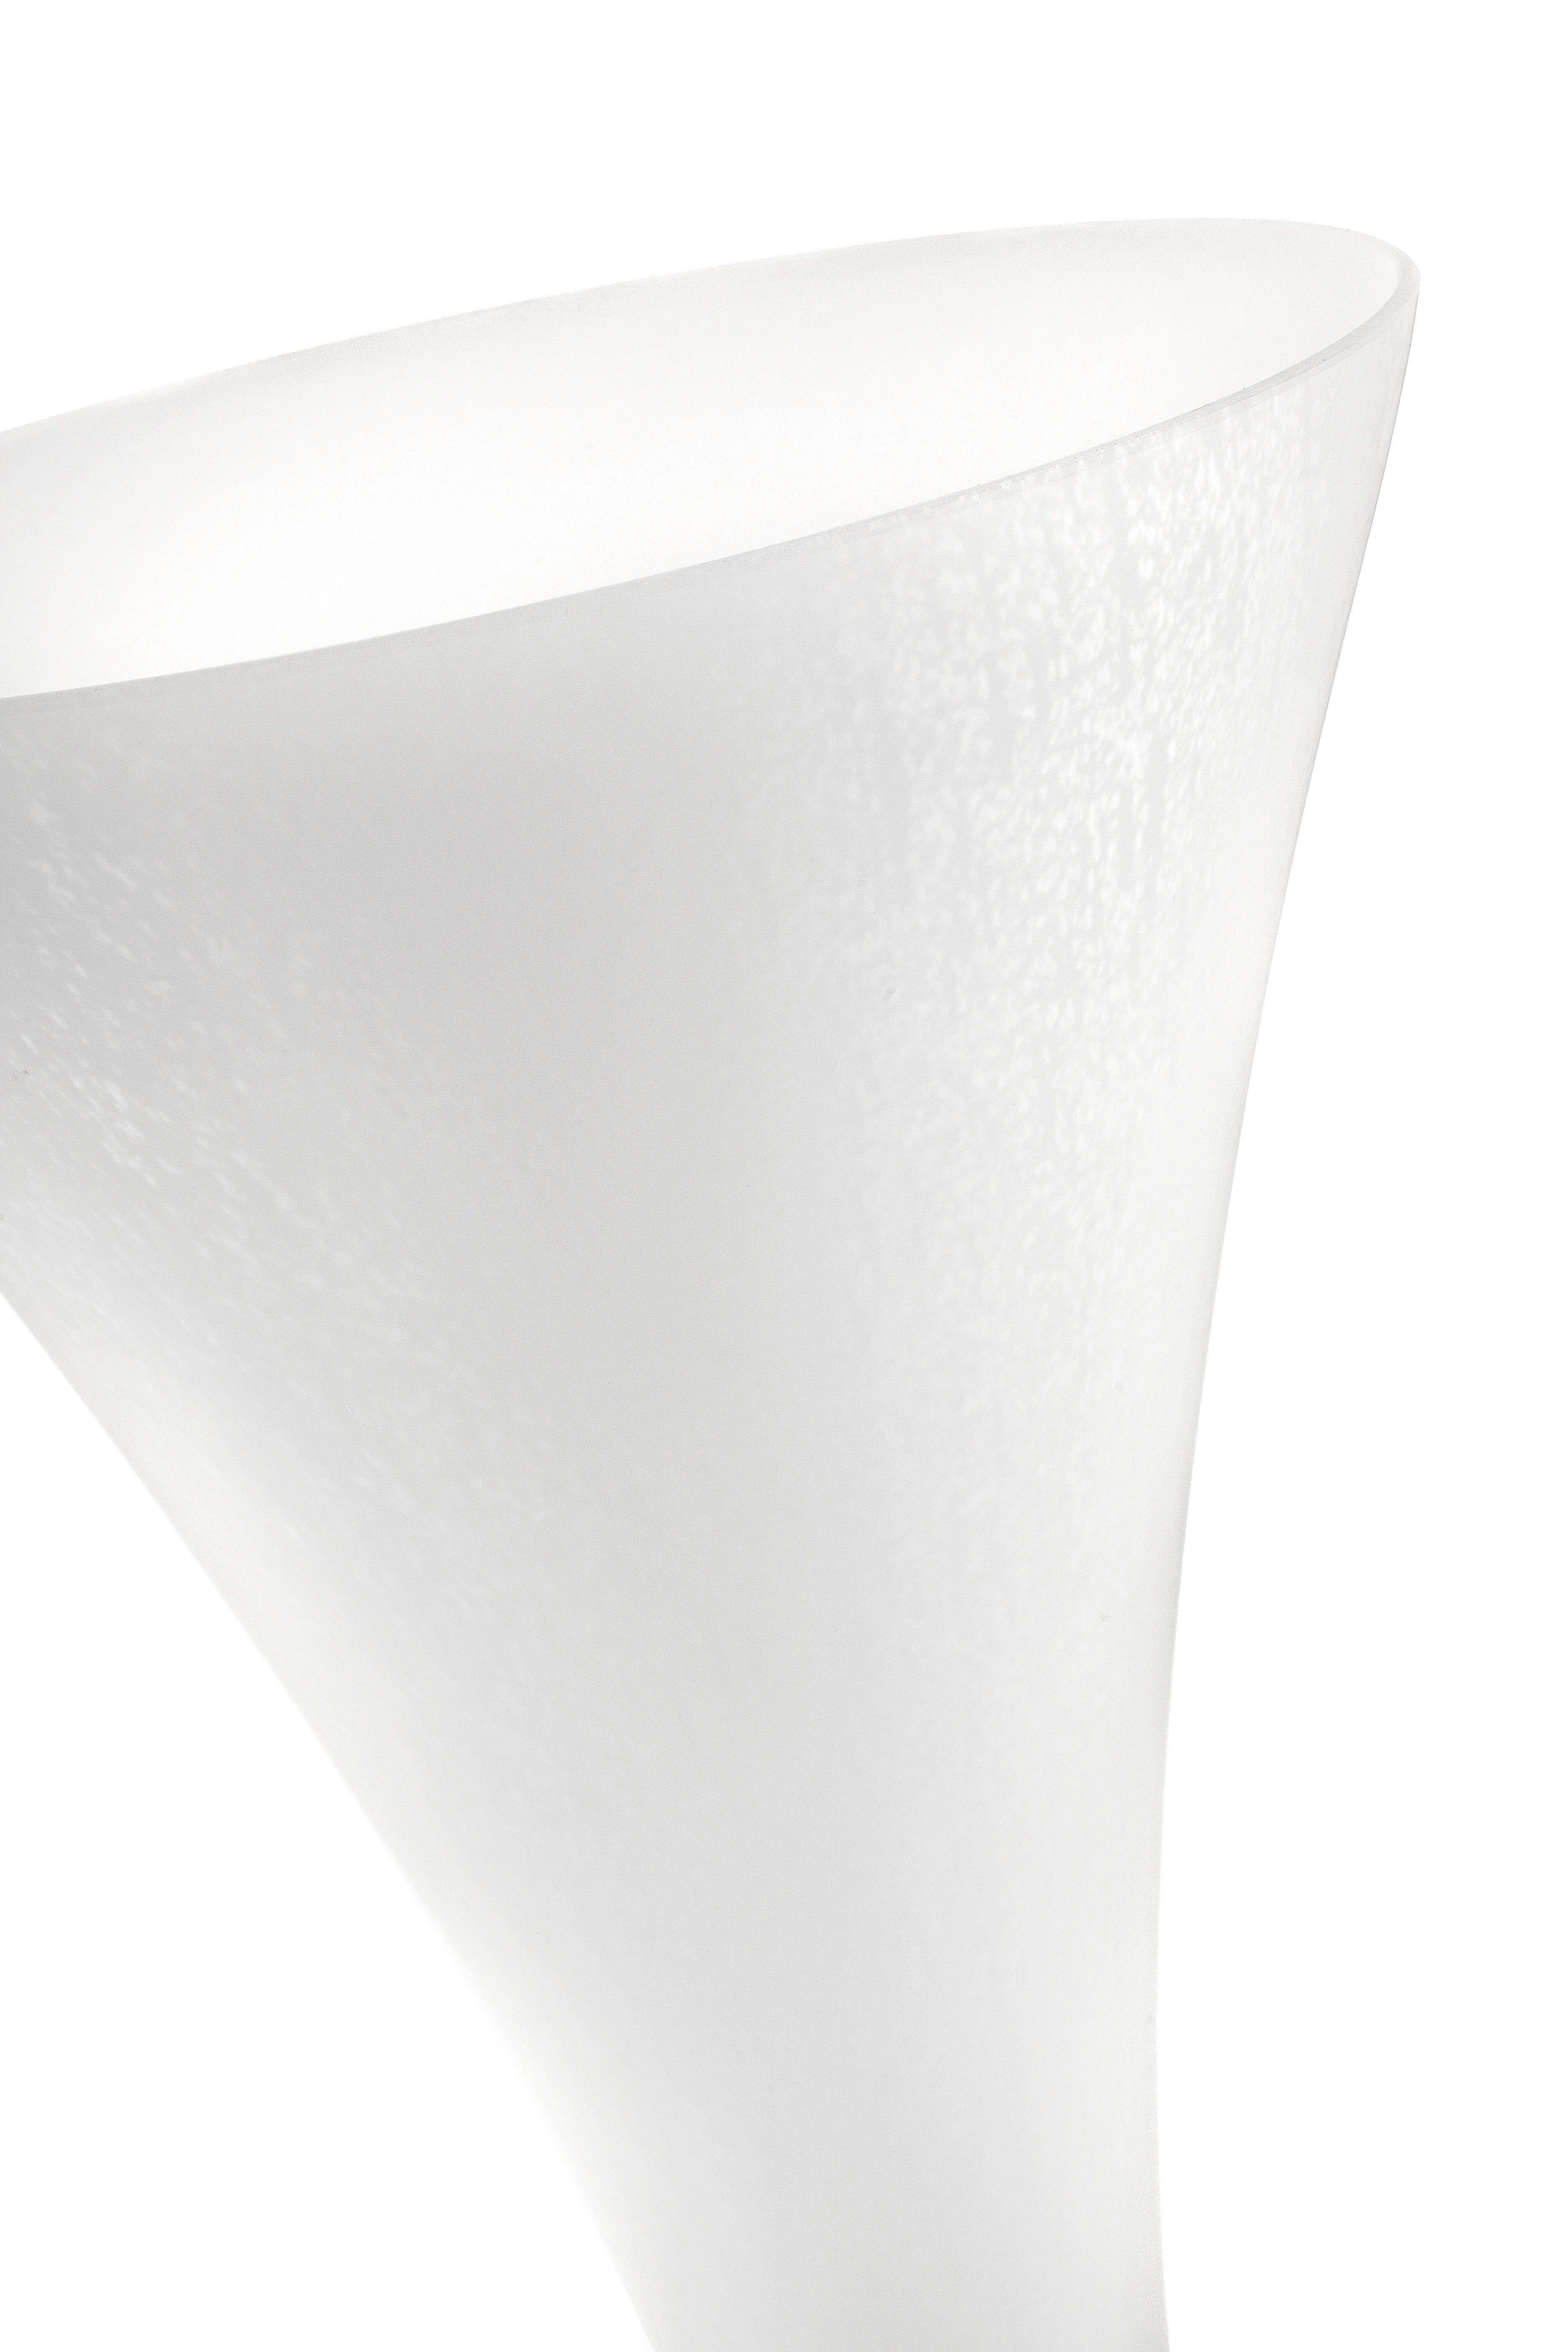 Vistosi Lepanto SP Suspension Light in White Glass by Luciano Vistosi In New Condition For Sale In Mogliano Veneto, Treviso